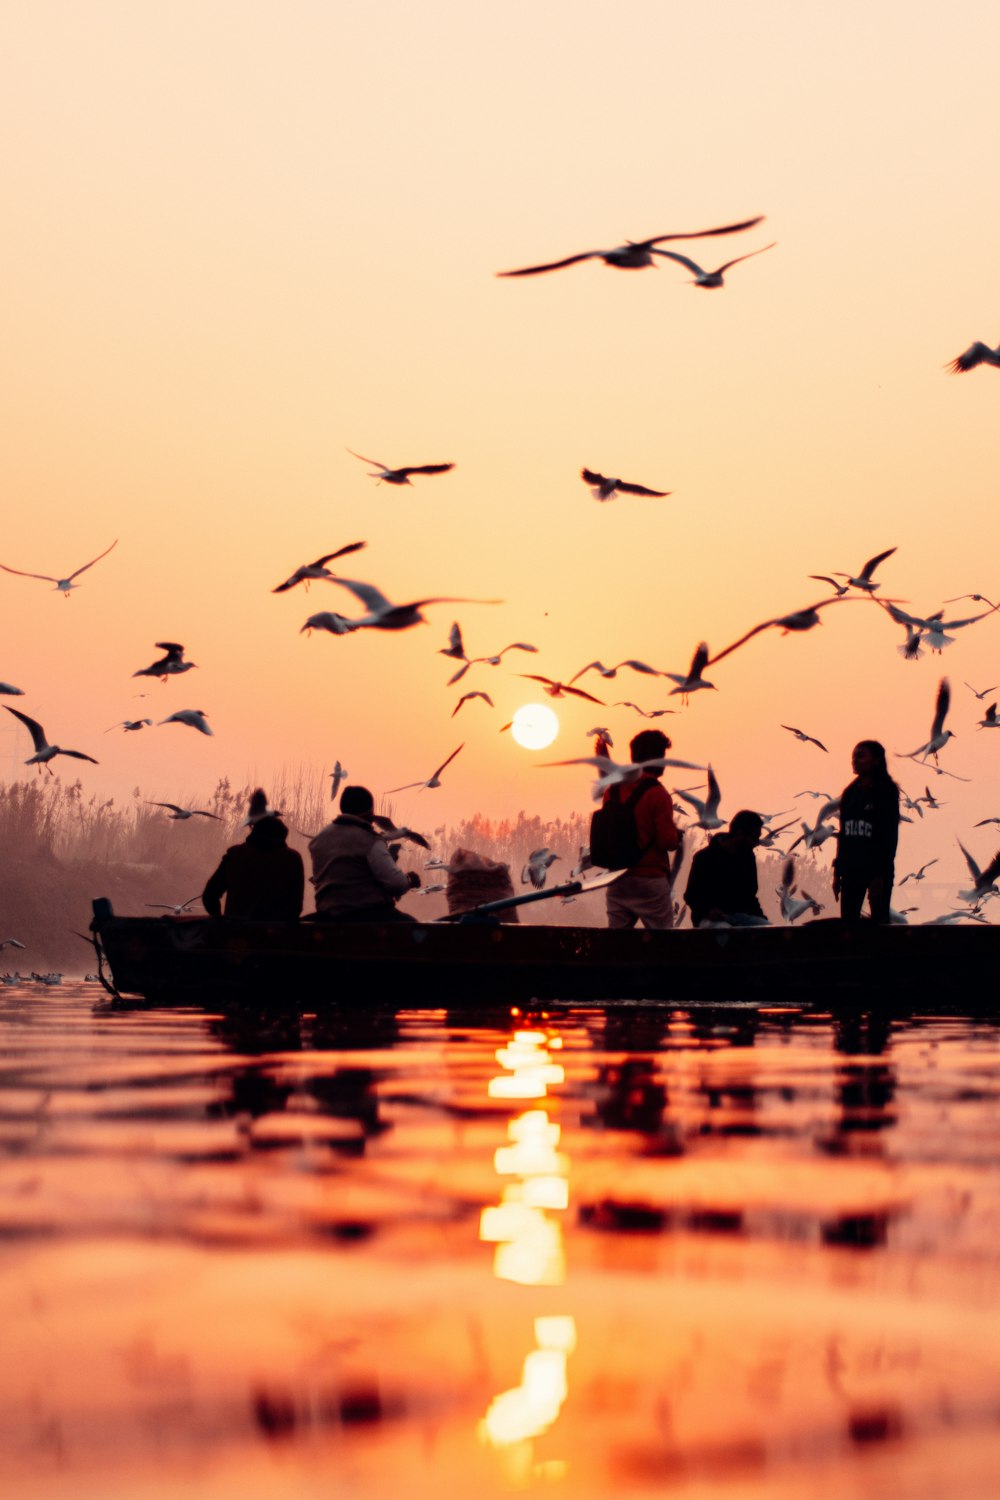 Un grupo de personas en un bote con pájaros volando sobre ellos